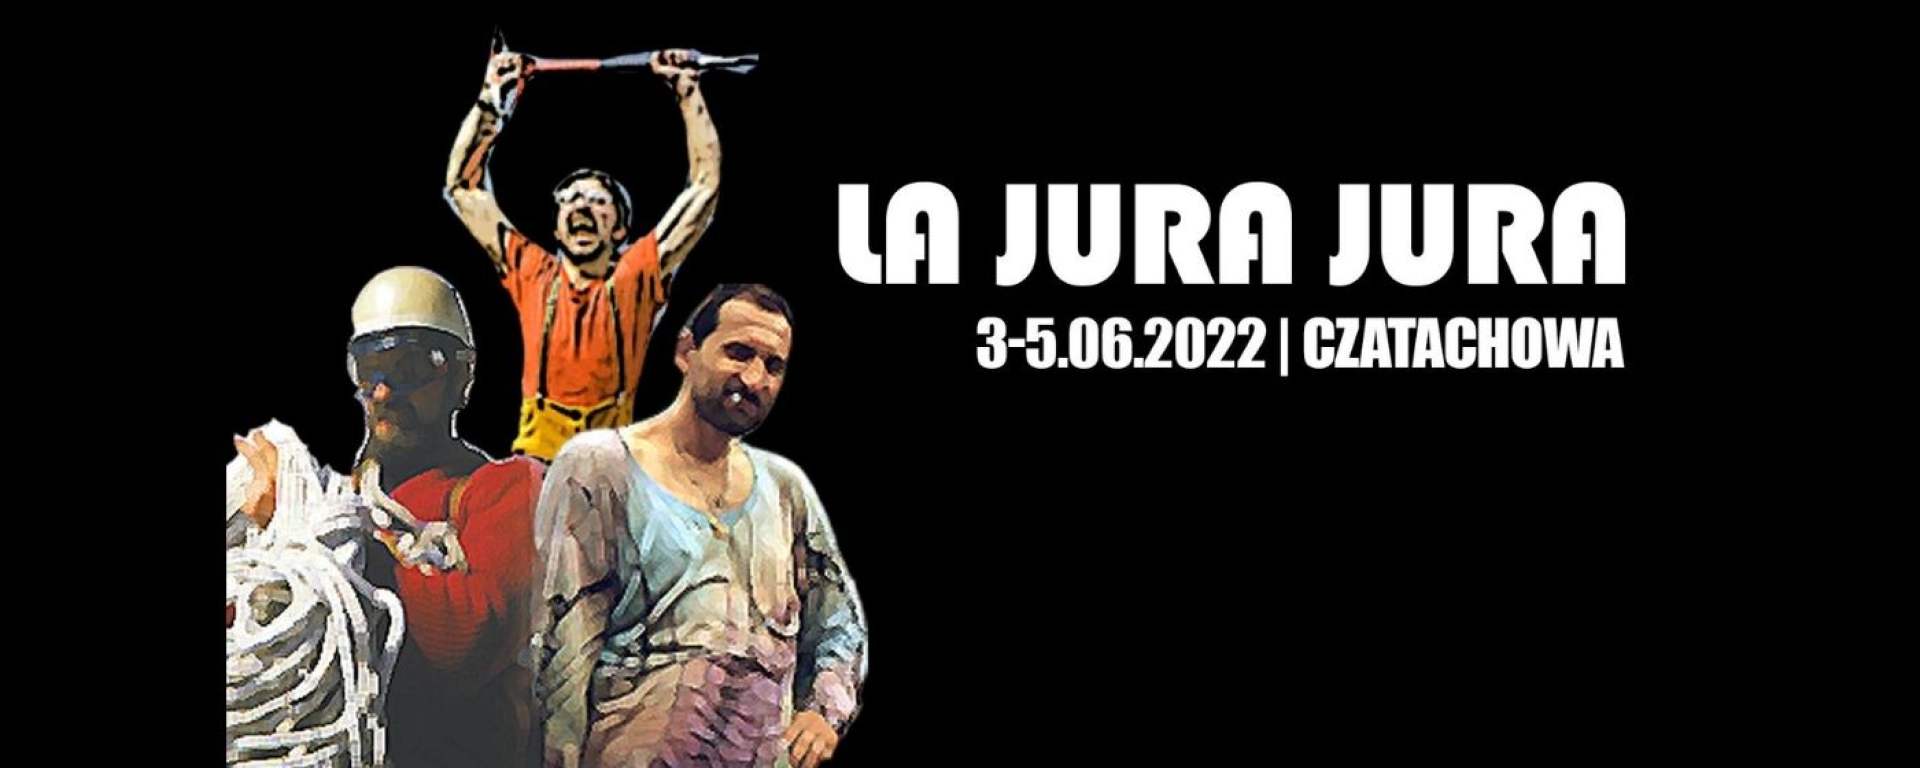 Dziewiąta odsłona La Jura Jura odbędzie się w dniach 3-5 czerwca w miejscowości Czatachowa.